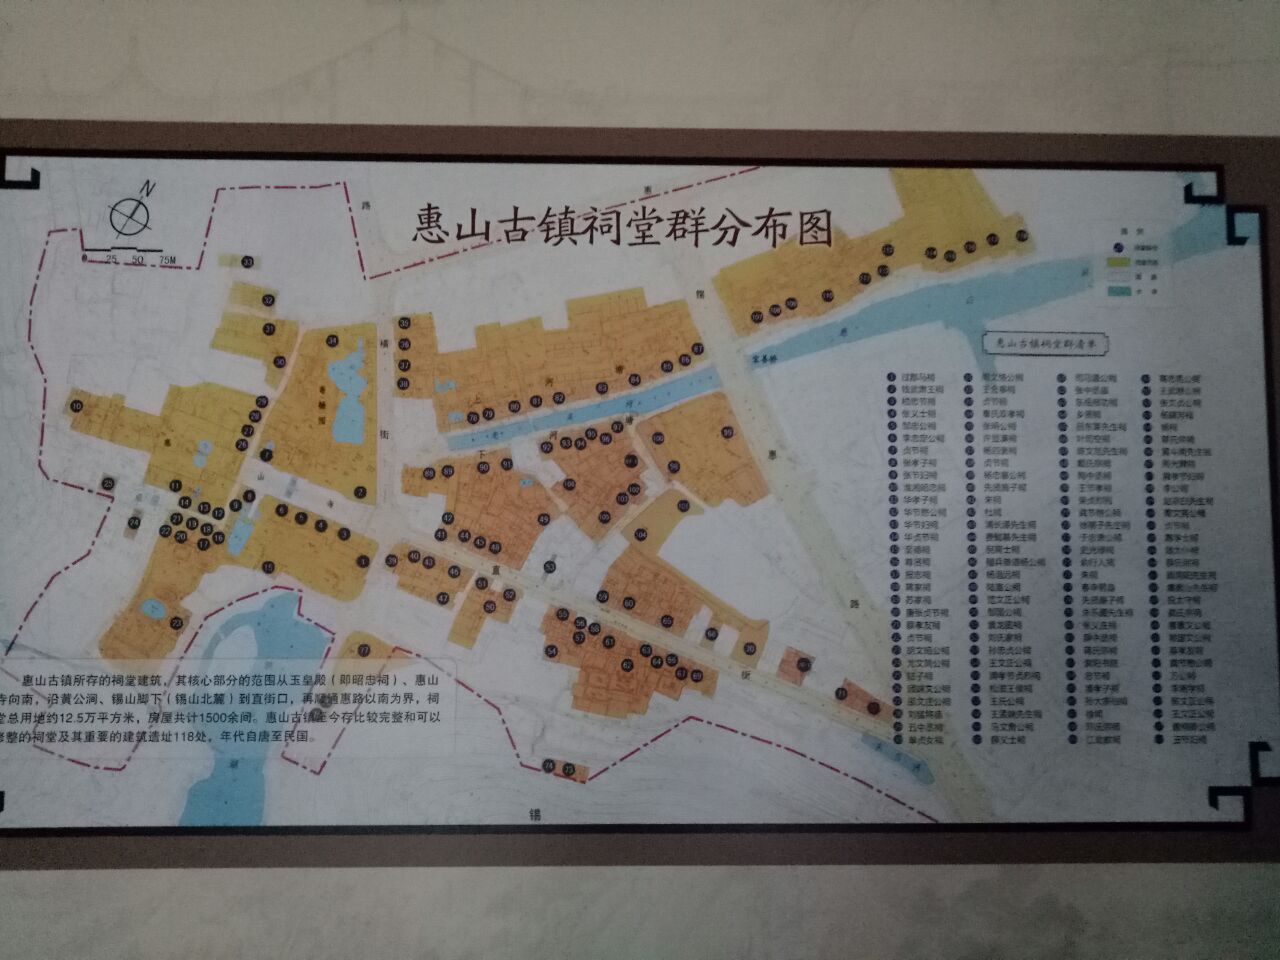 无锡惠山古镇地图清晰图片